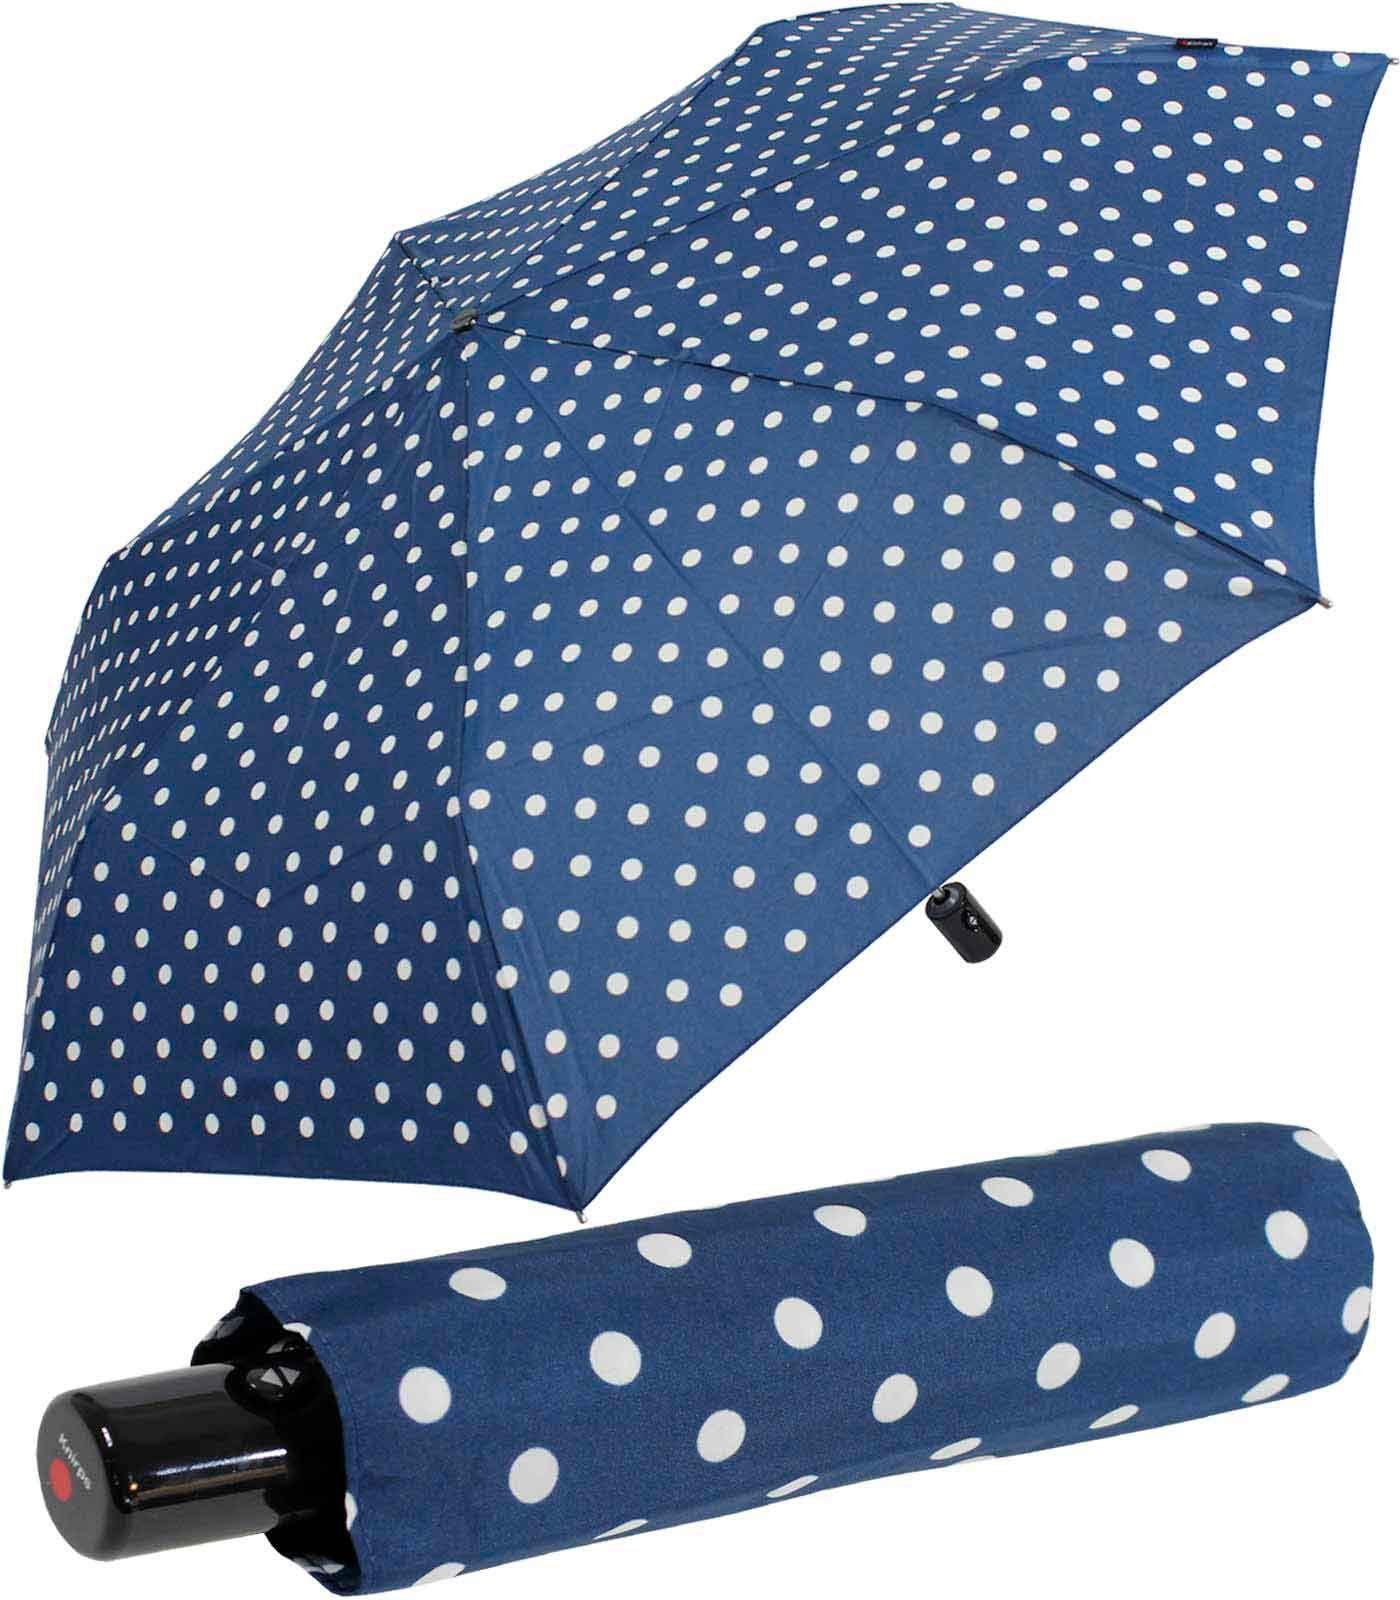 Knirps® Taschenregenschirm Slim Duomatic mit Auf-Zu-Automatik - Polka Dots, immer mit dabei, passt in jede Tasche blau-weiß